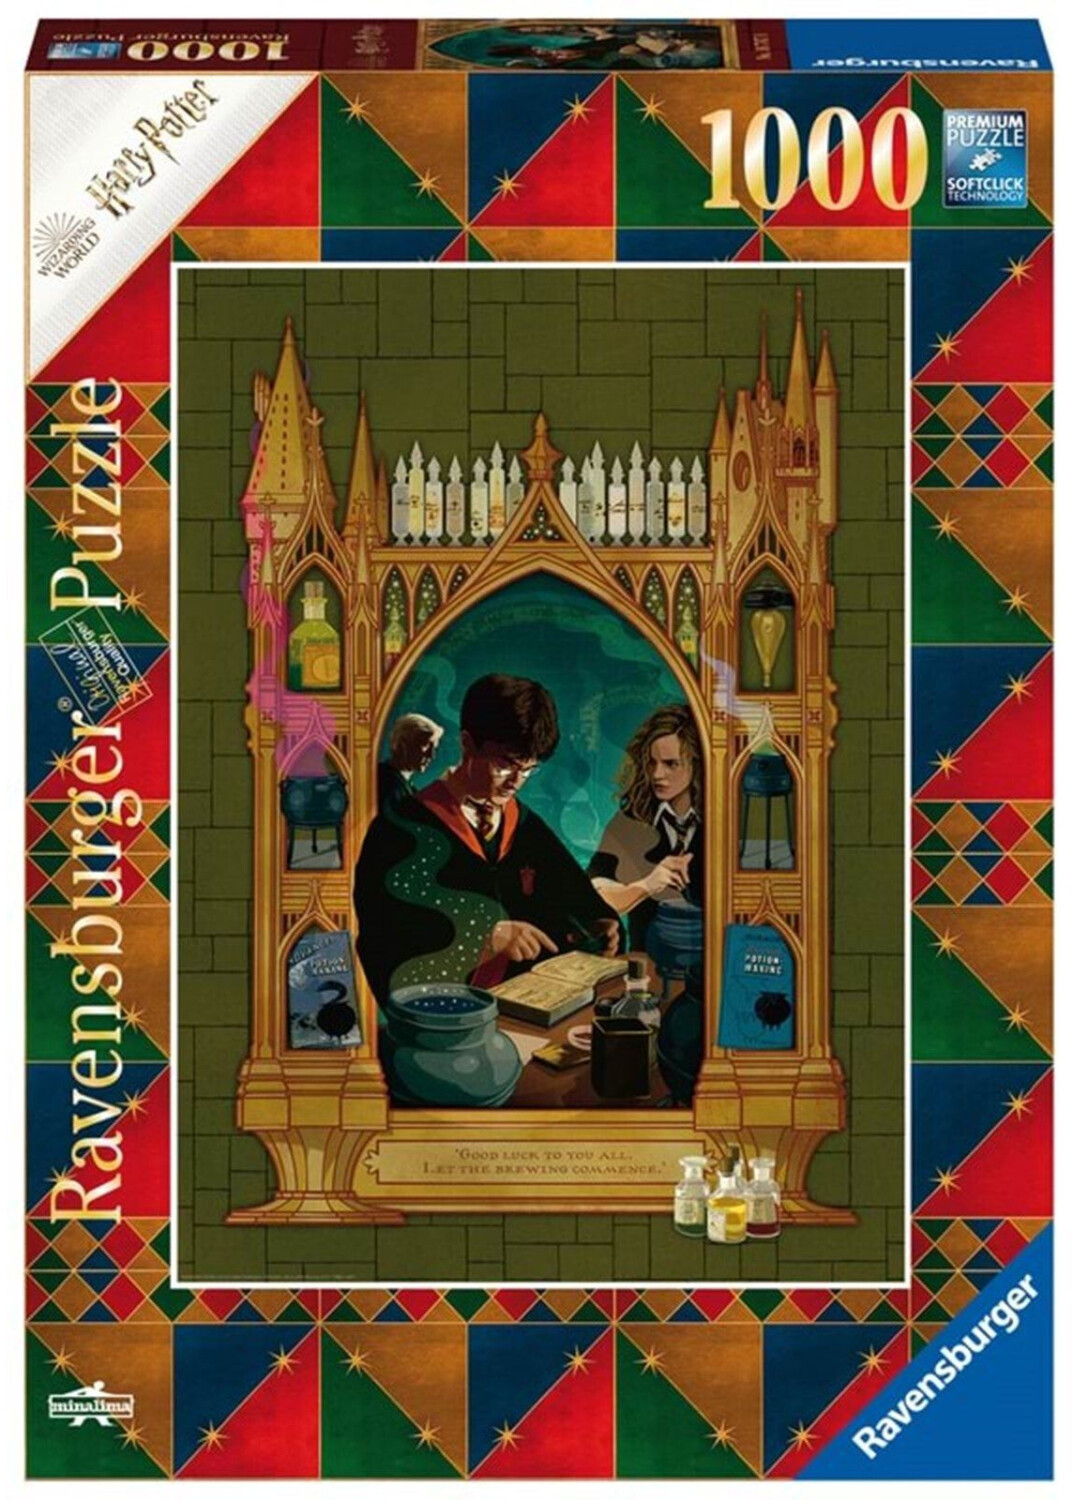 Photos - Jigsaw Puzzle / Mosaic Ravensburger Puzzle - Harry Potter 6 - 1000 Pieces  (16747)